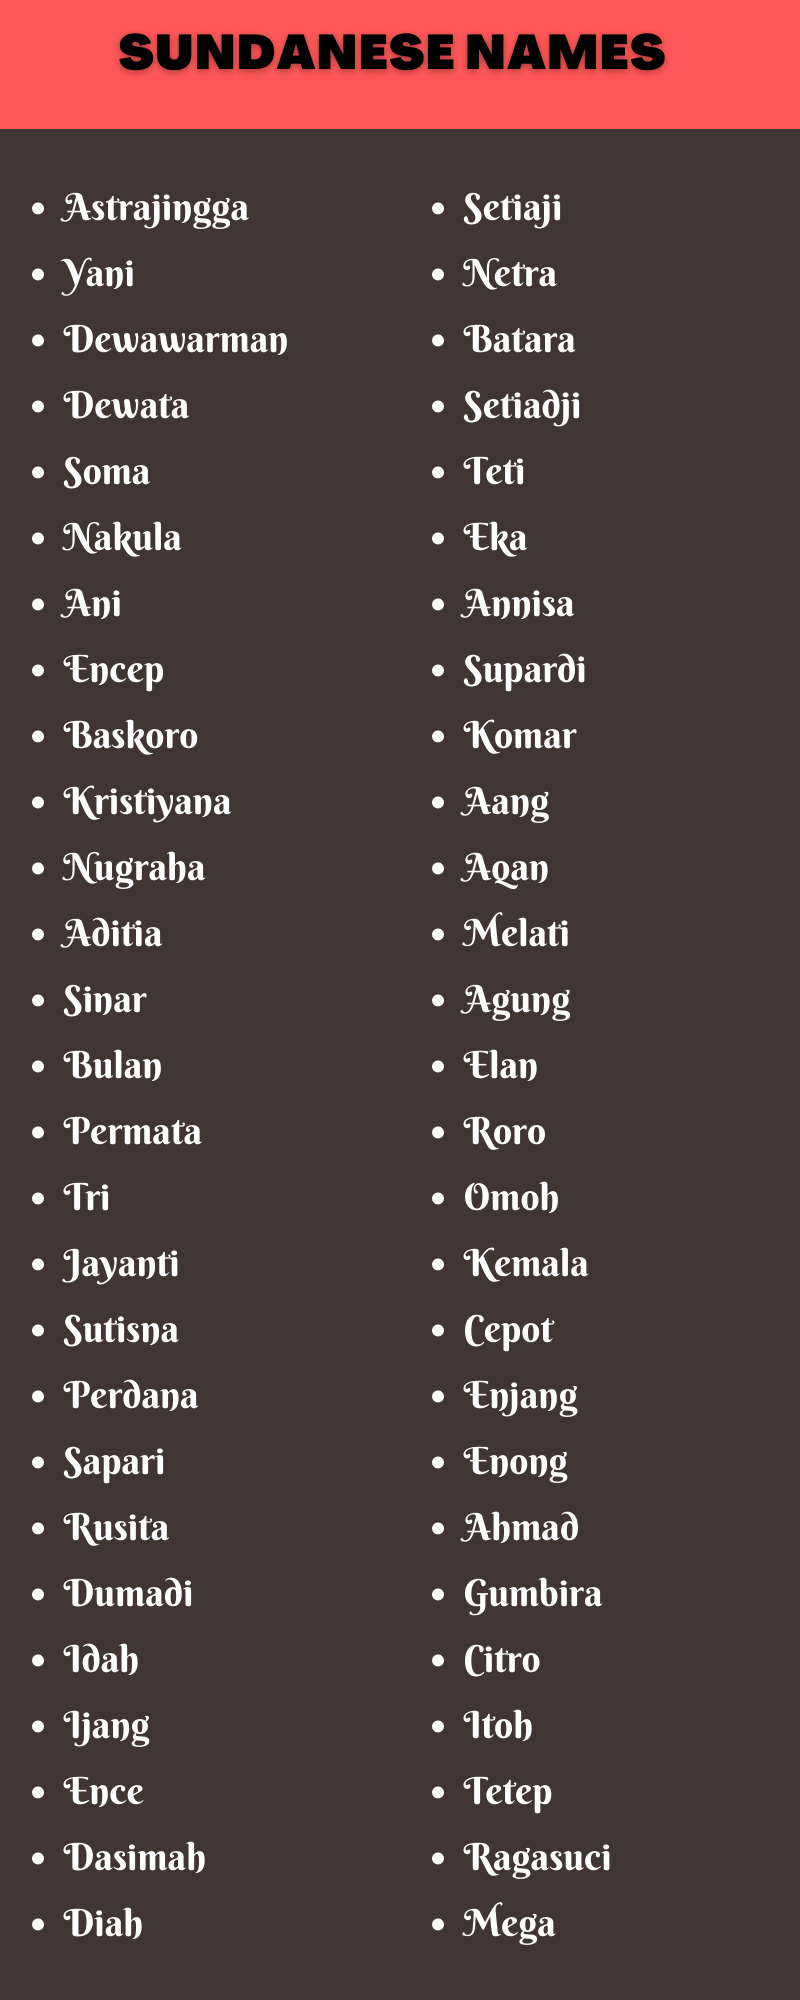 Sundanese Names